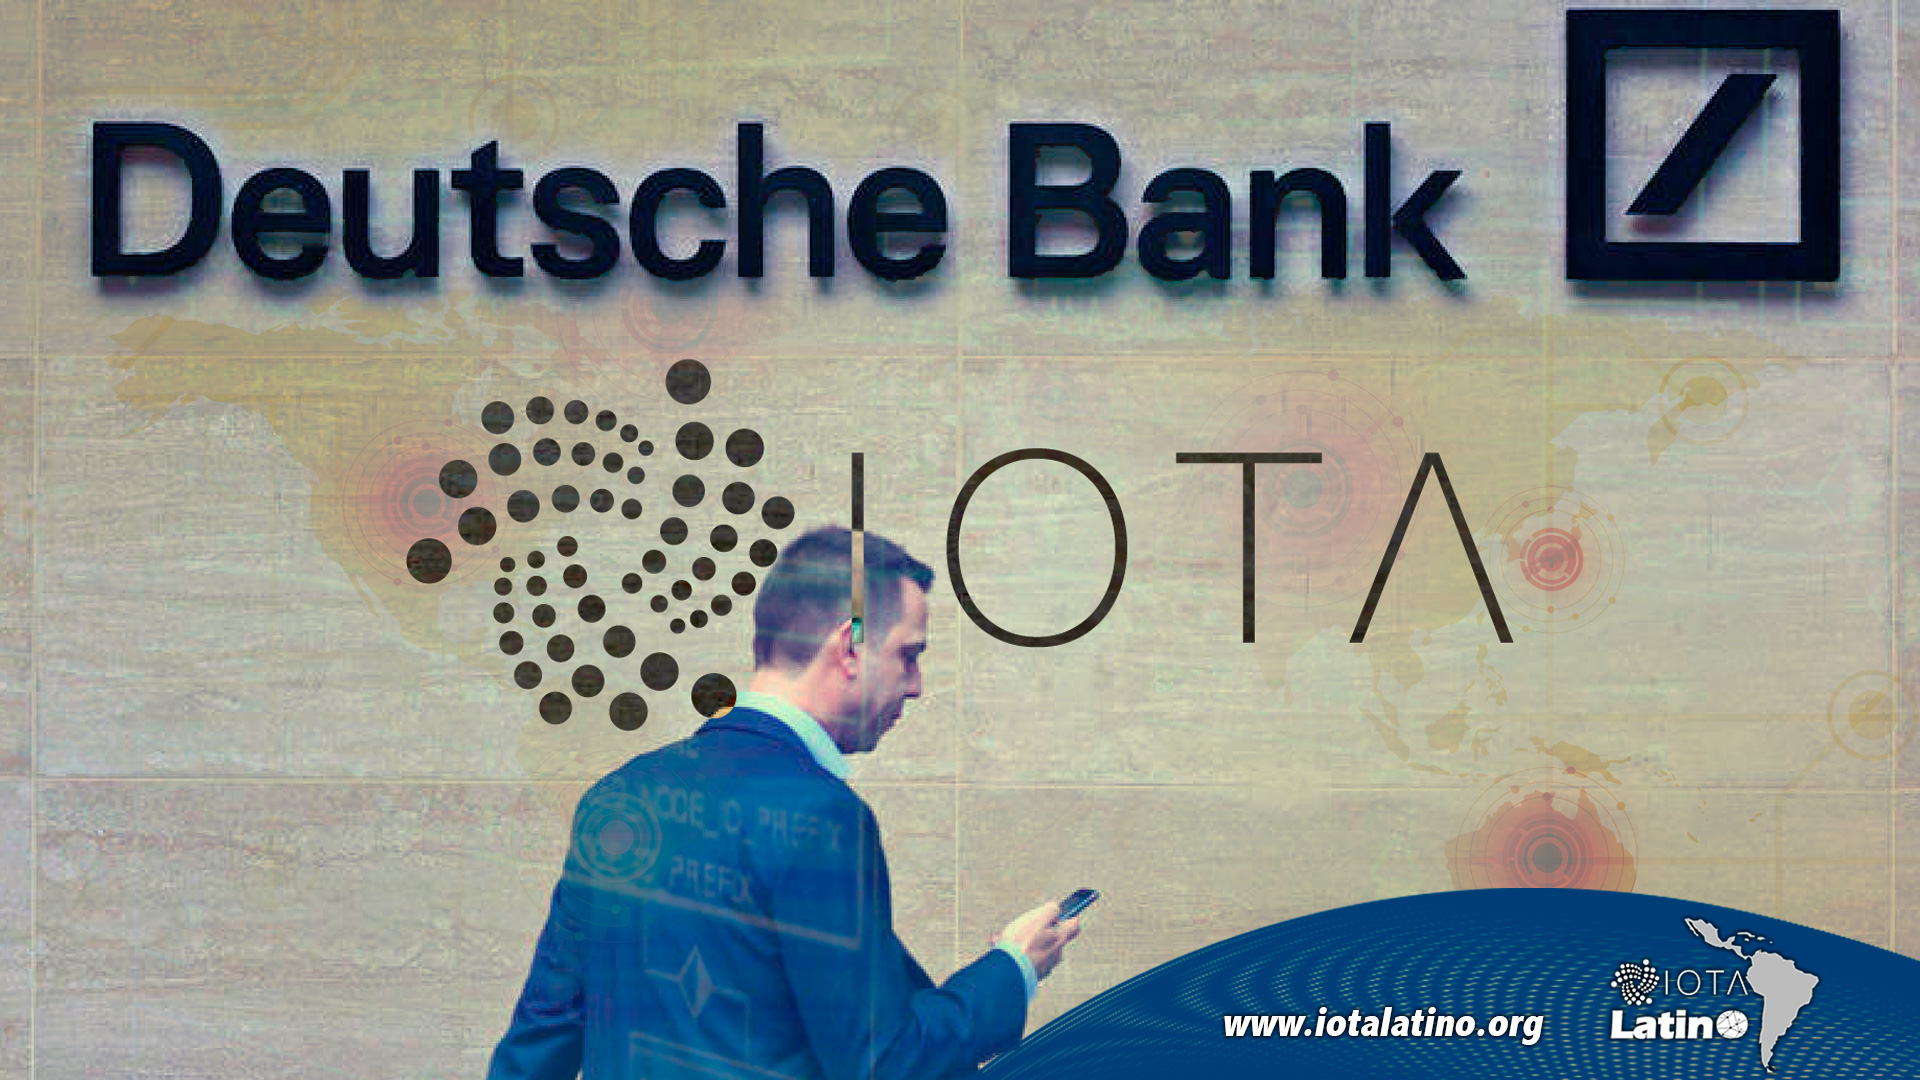 Deutsche Bank - IOTA Latino